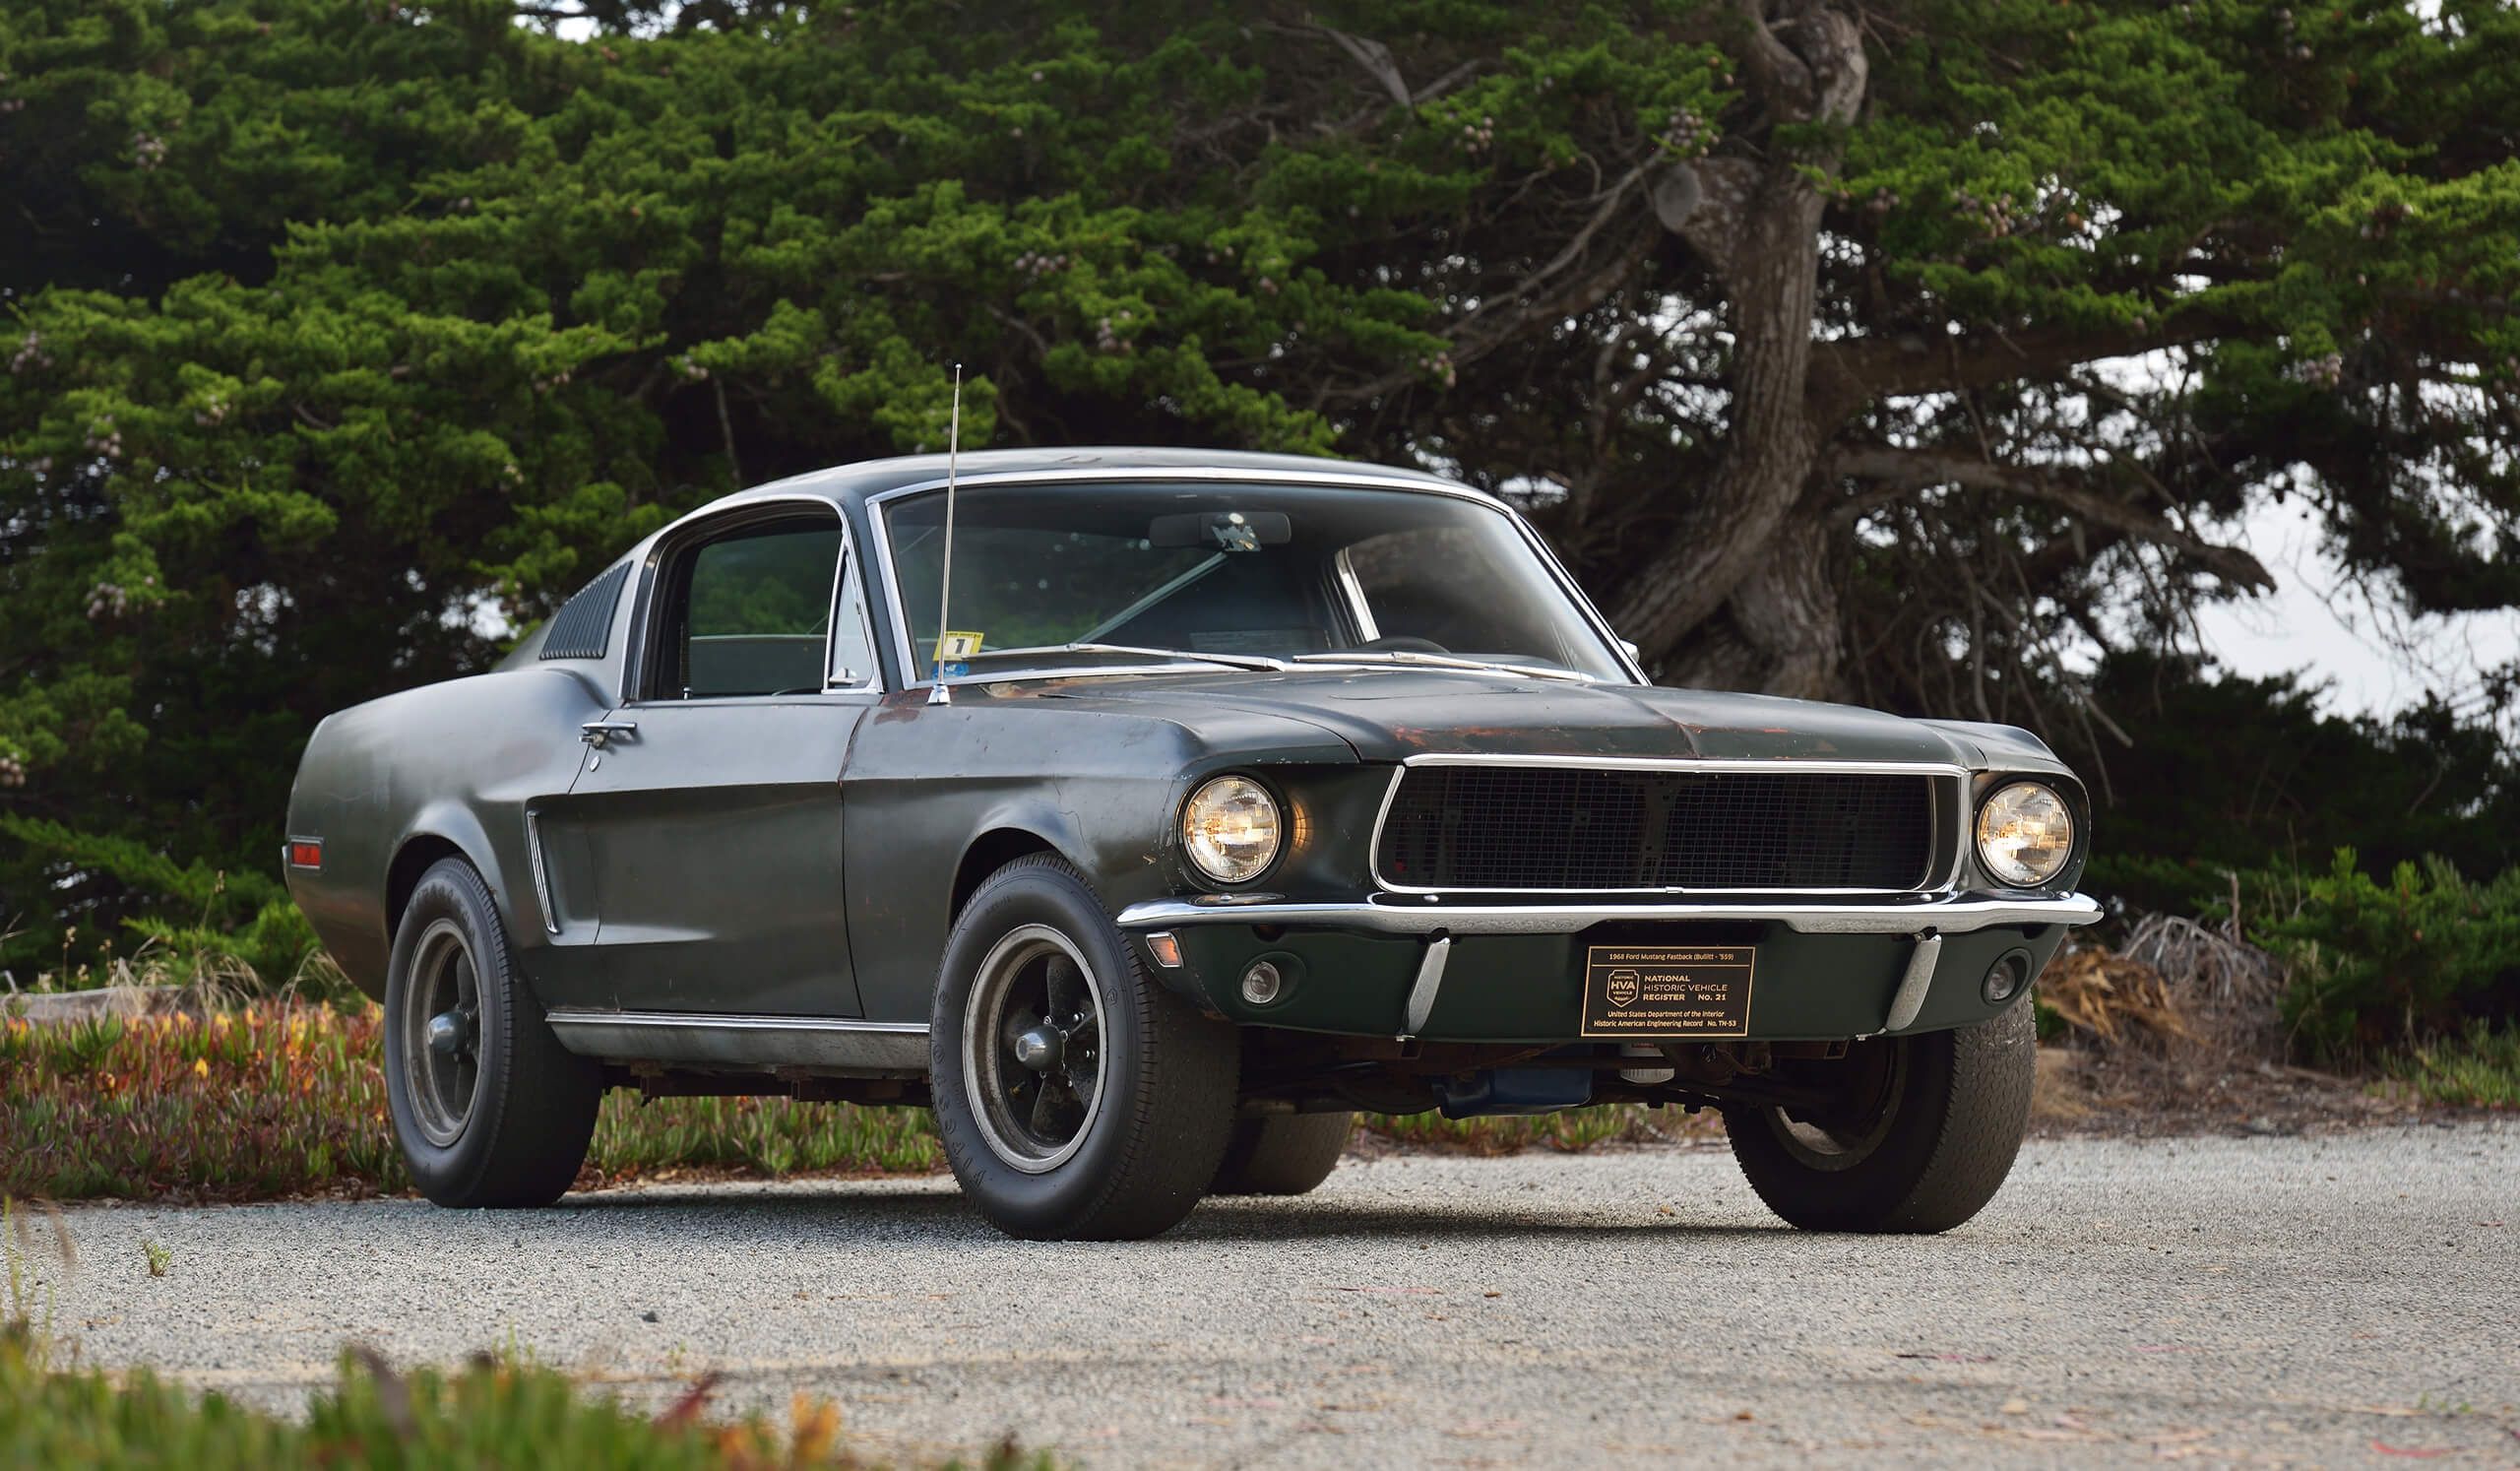 Ford-Mustang-Bullitt-1968